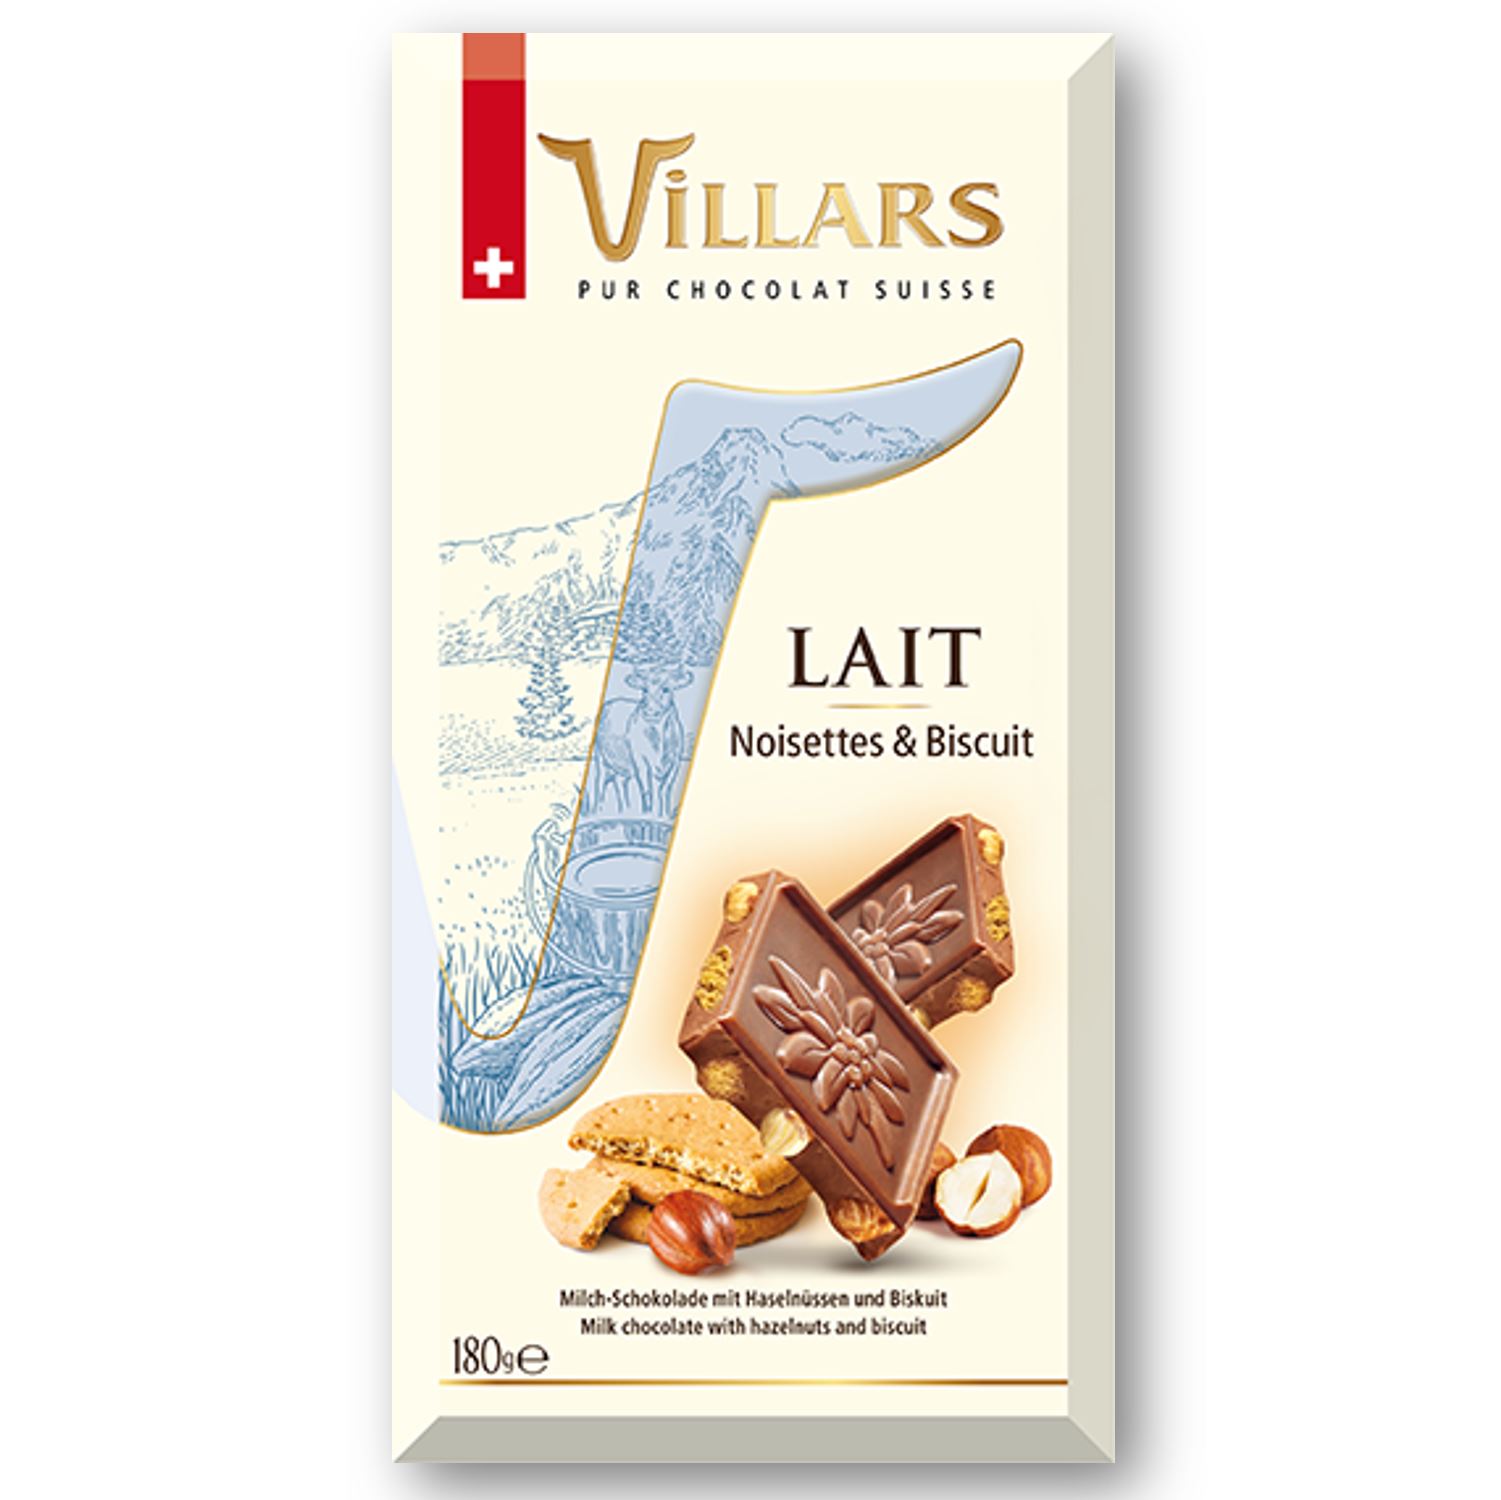 Pur chocolat Suisse Lait Noisettes & Biscuit